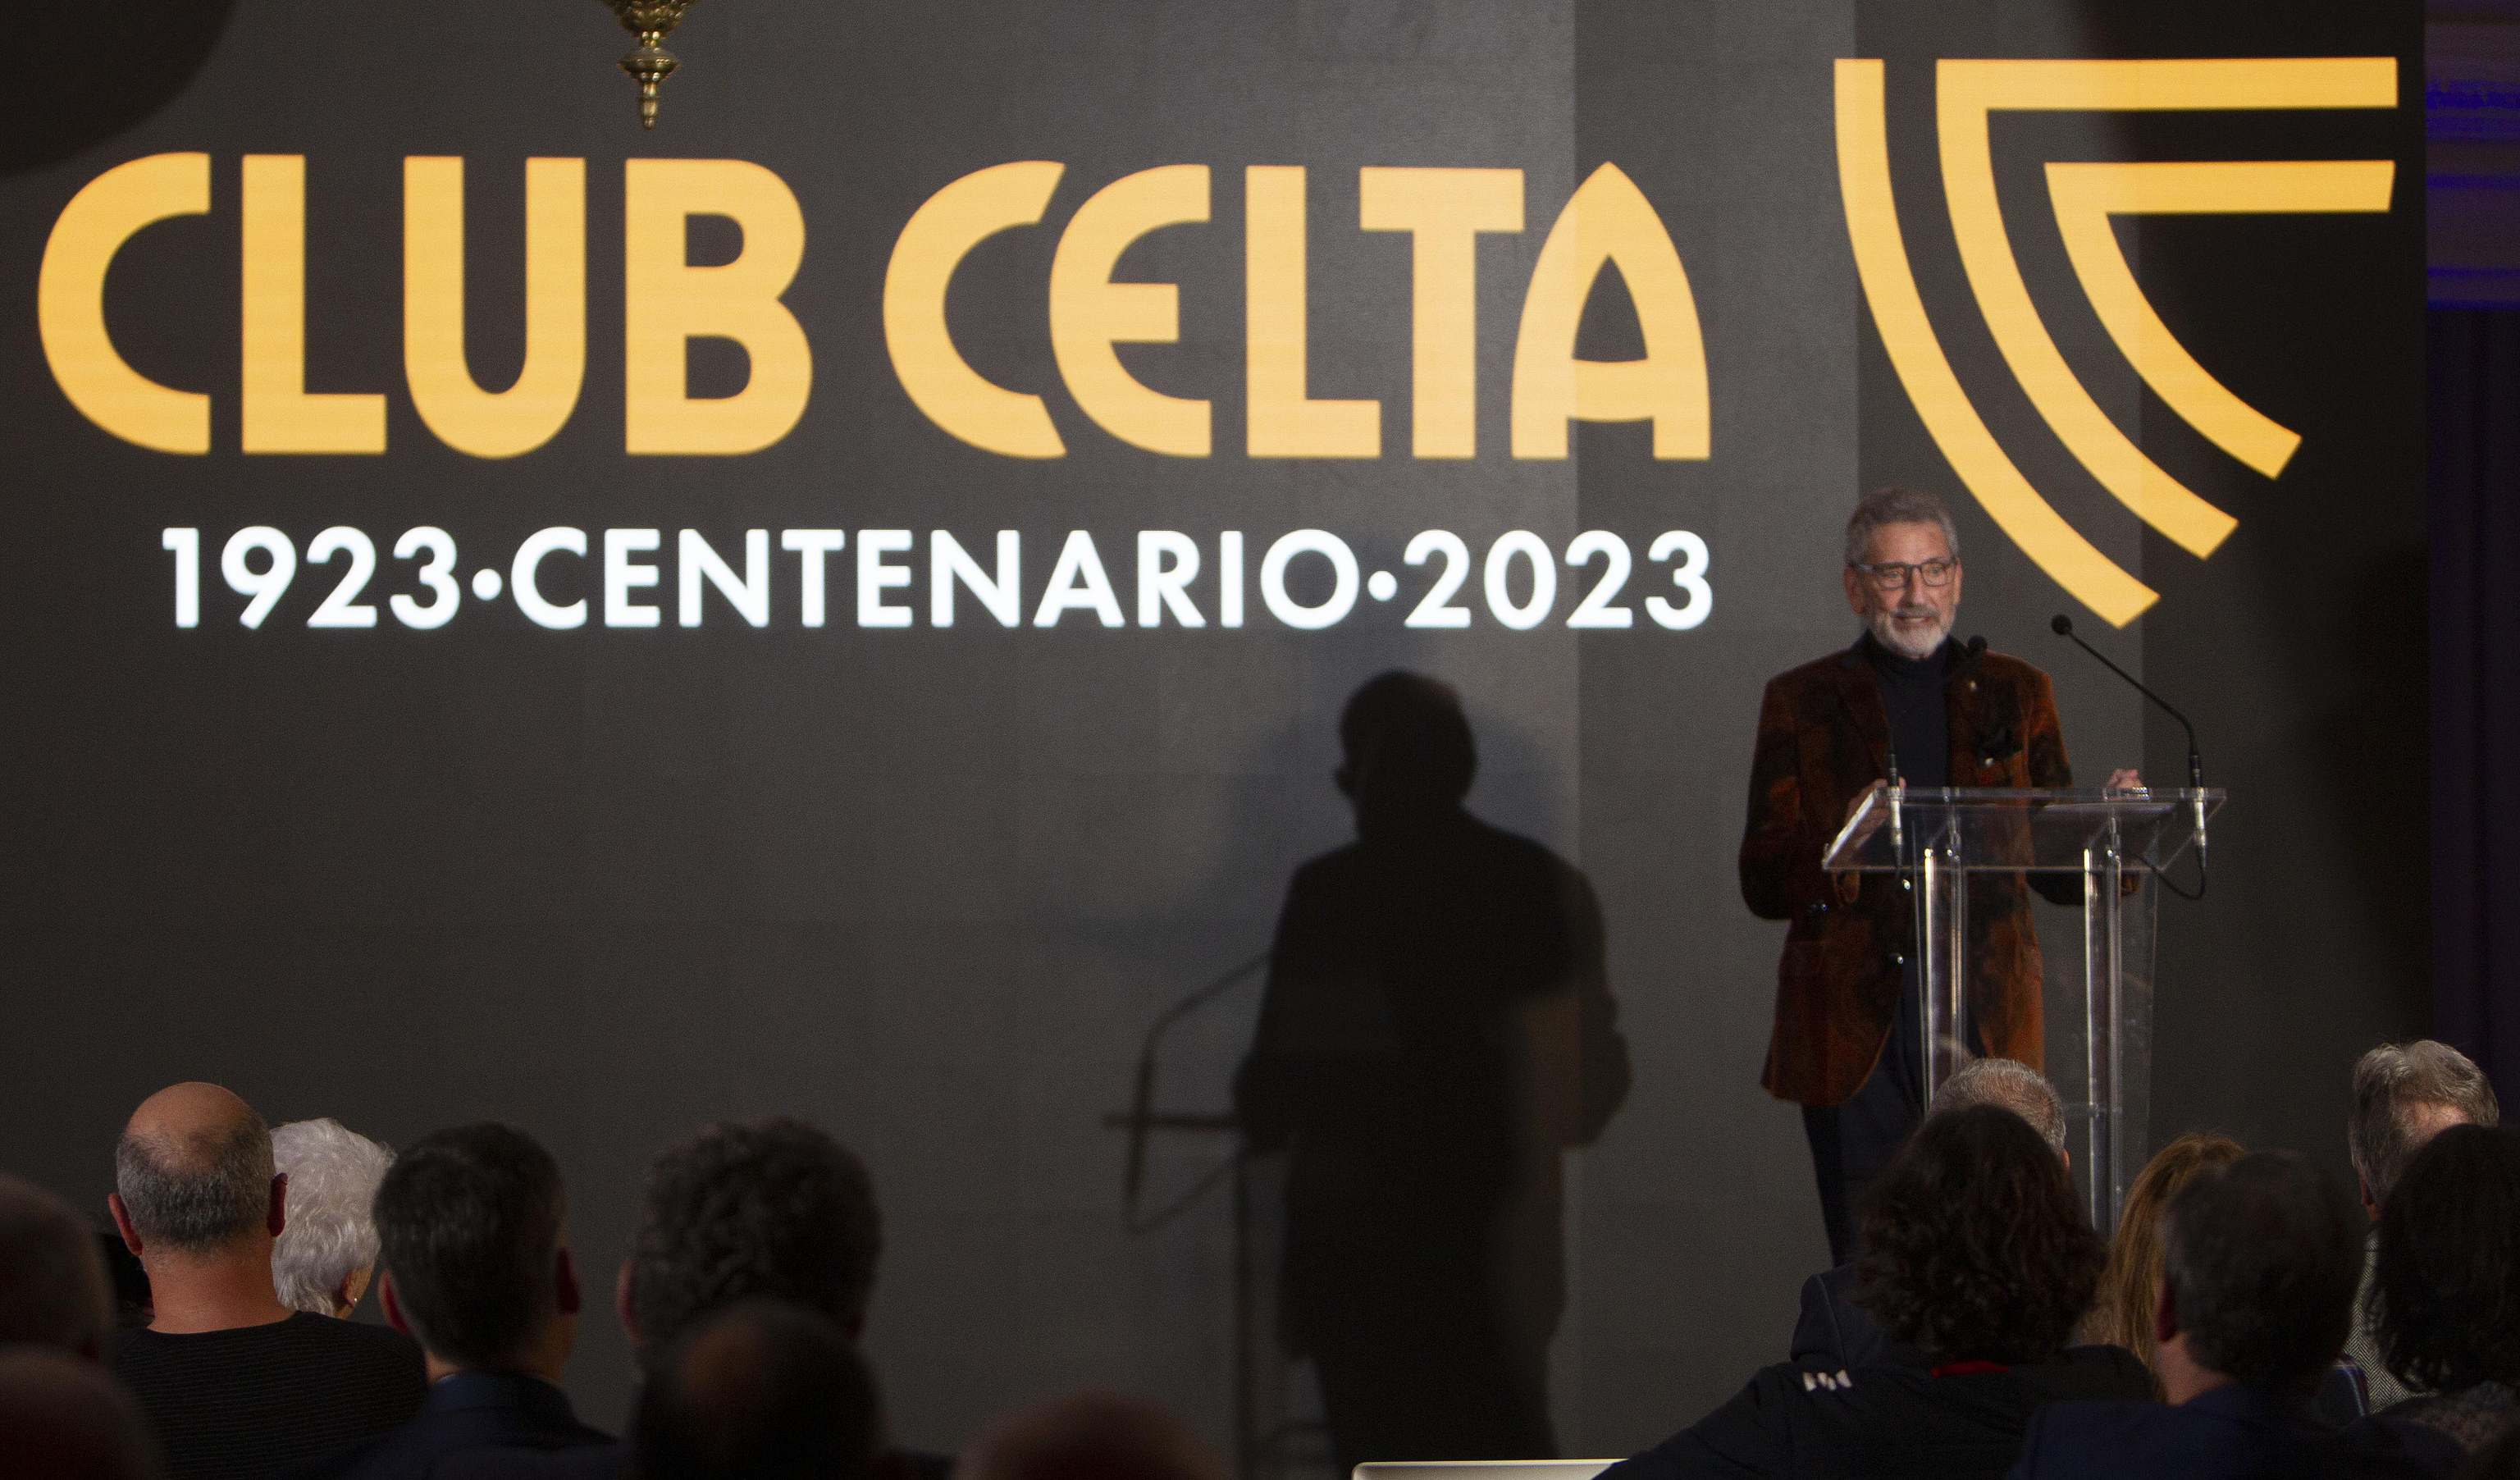 El presidente del Celta, Carlos Mouriño